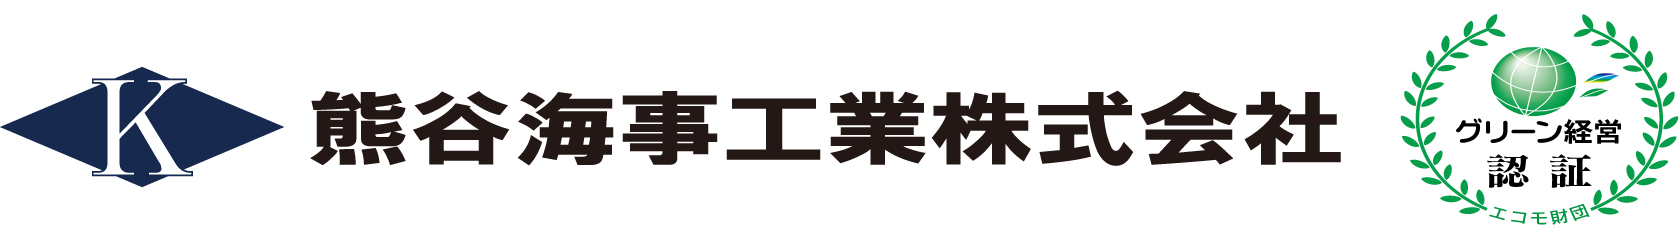 熊谷海事工業株式会社